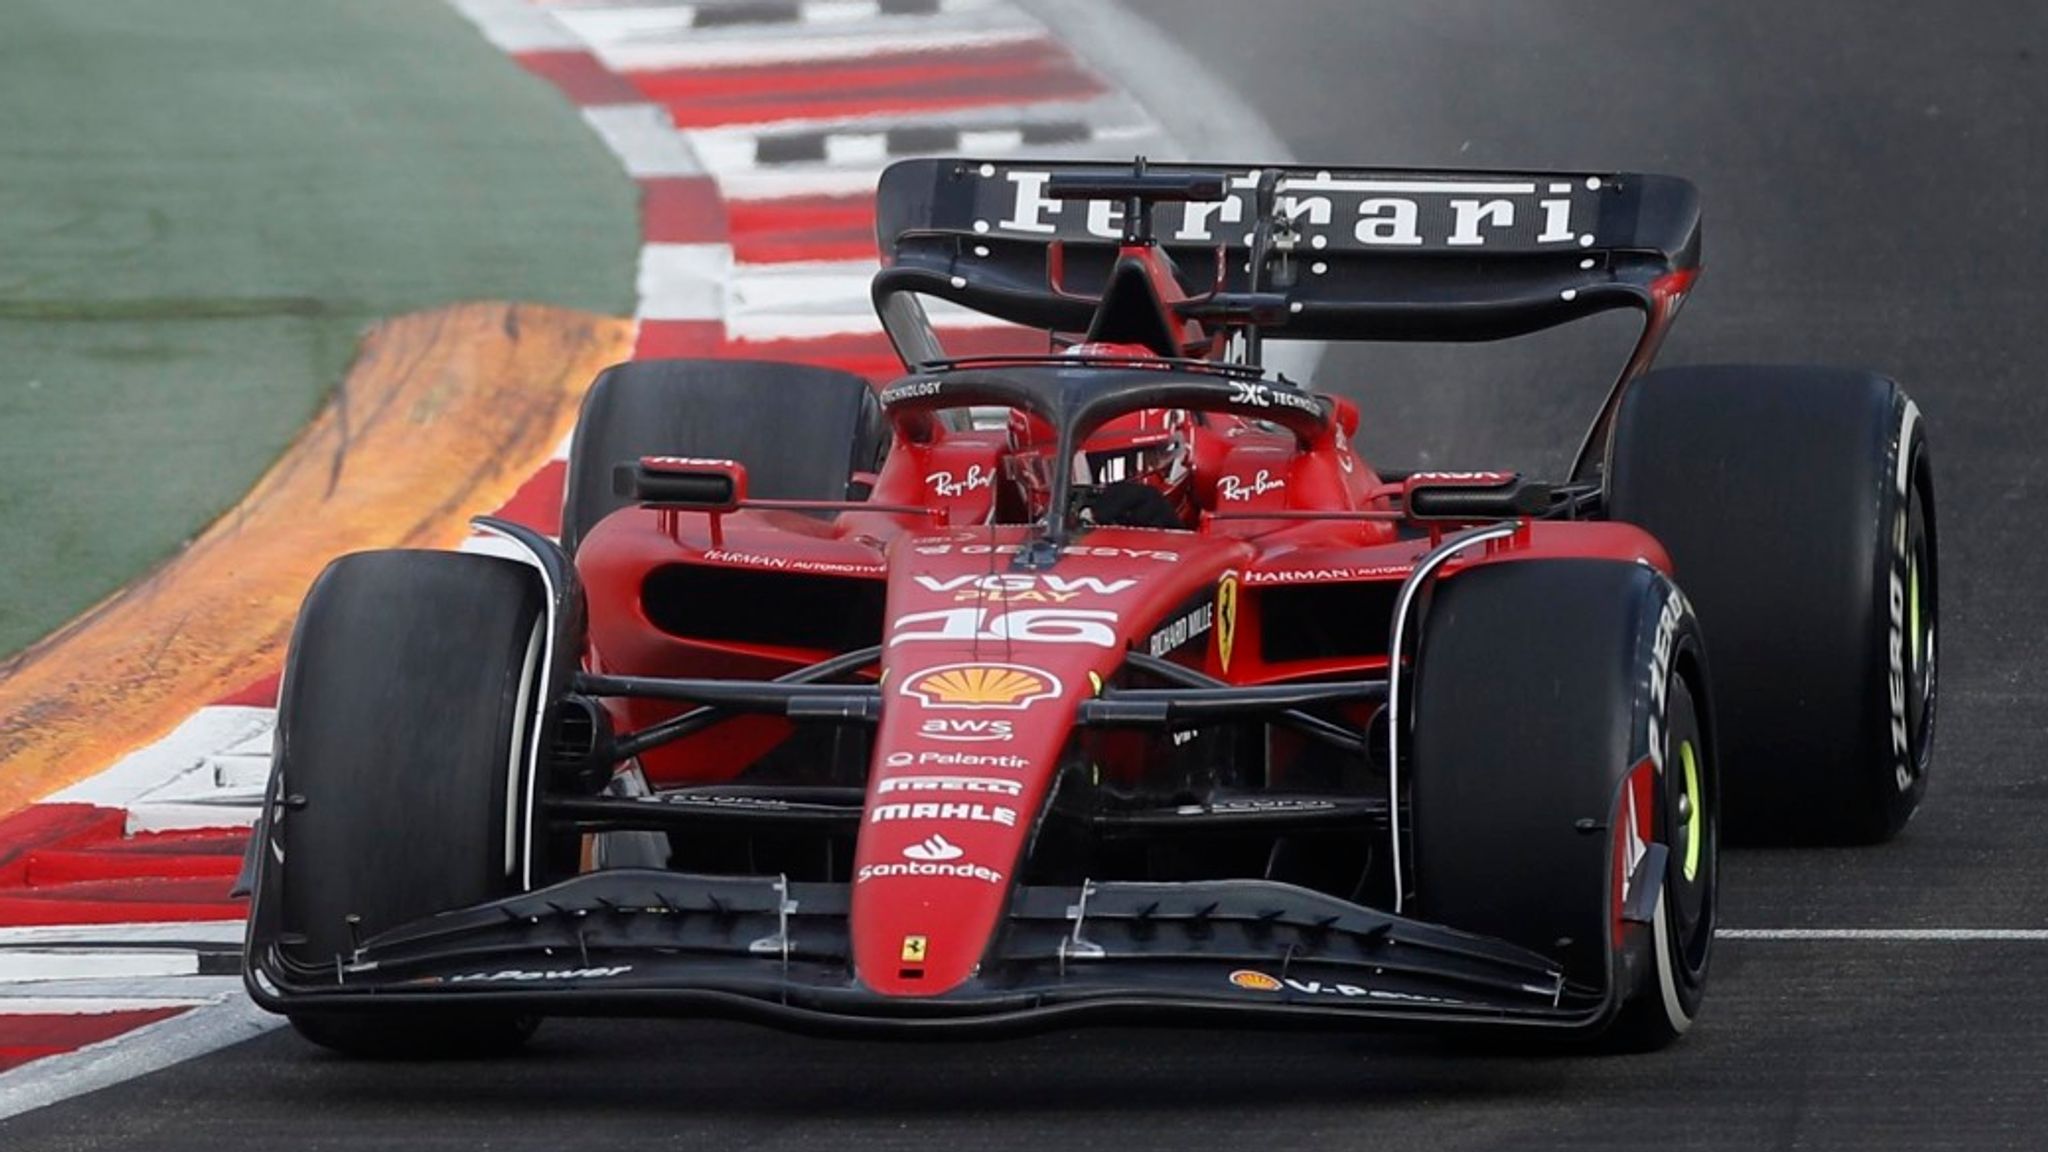 Affiche dart Leclerc Ferrari F1 SF-23 2023, affiche Formule 1